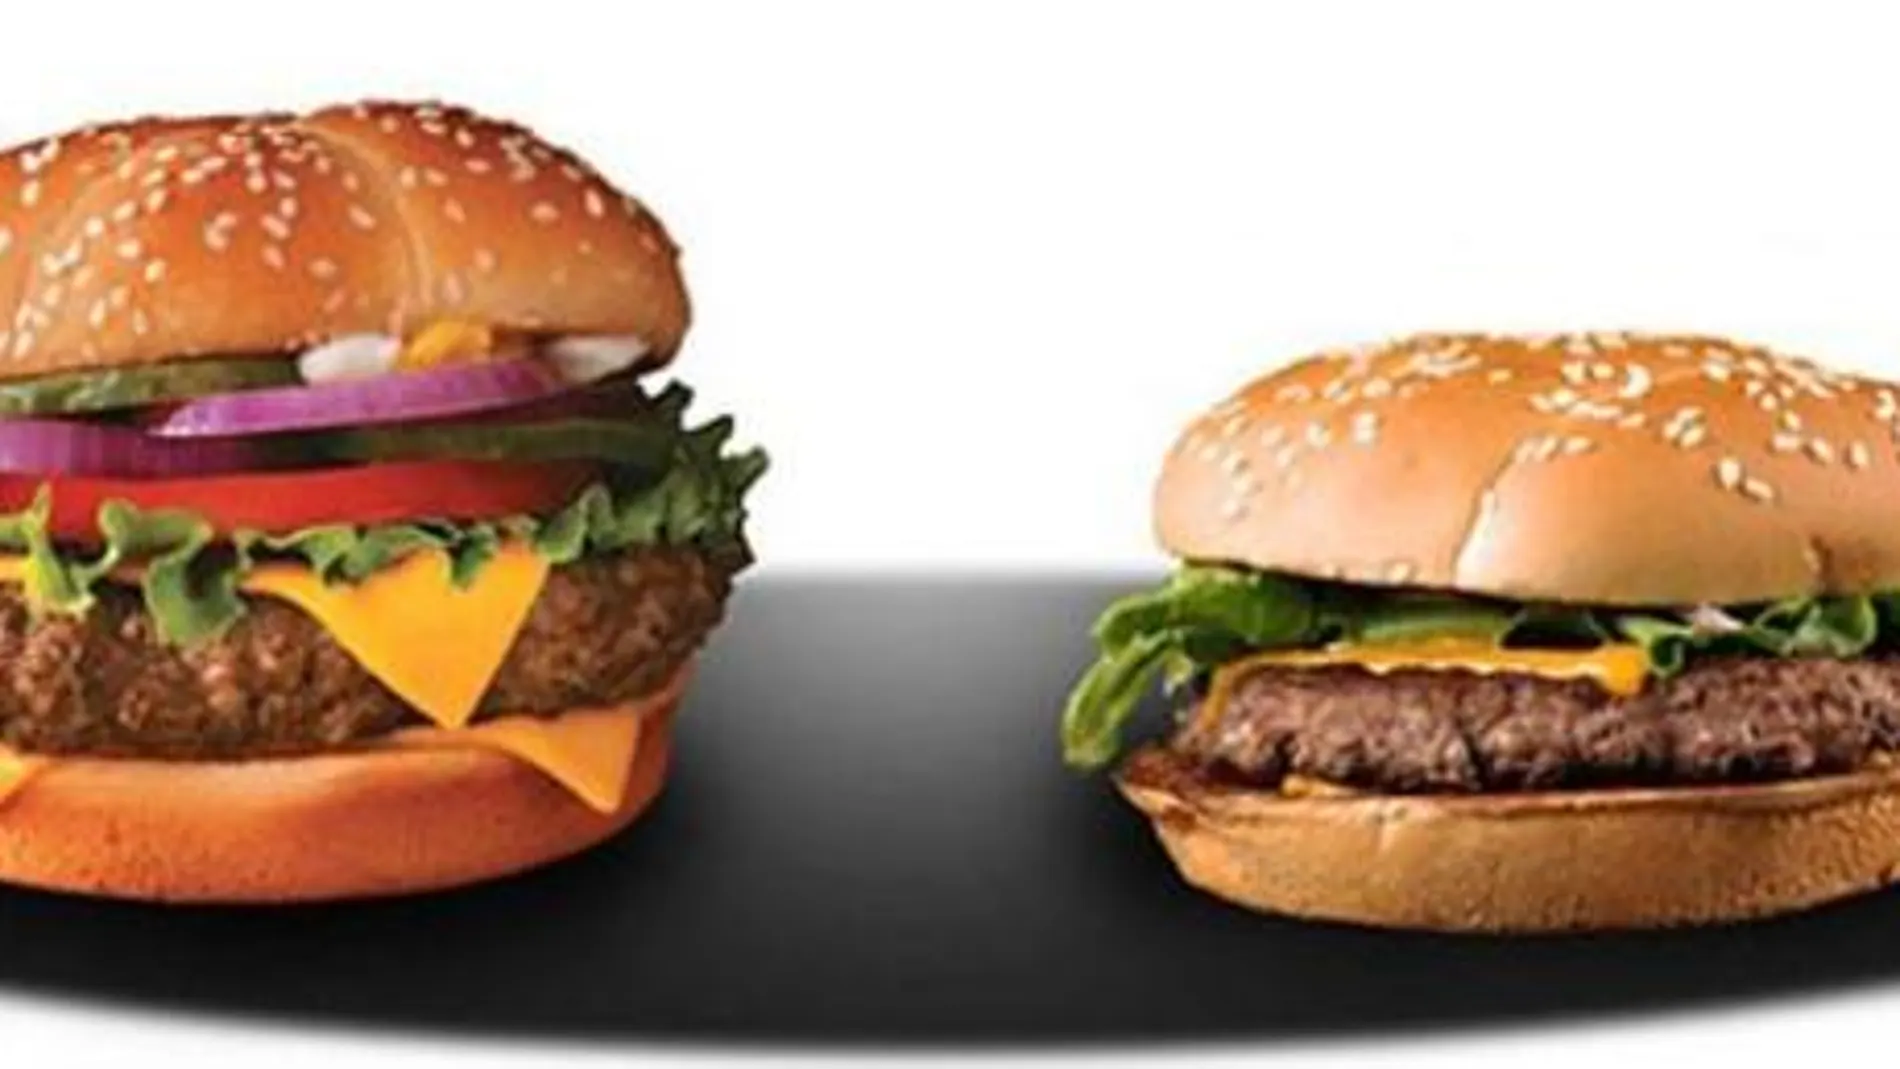 Imagen de la hamburguesa que ofrece la publicidad y la hamburguesa real